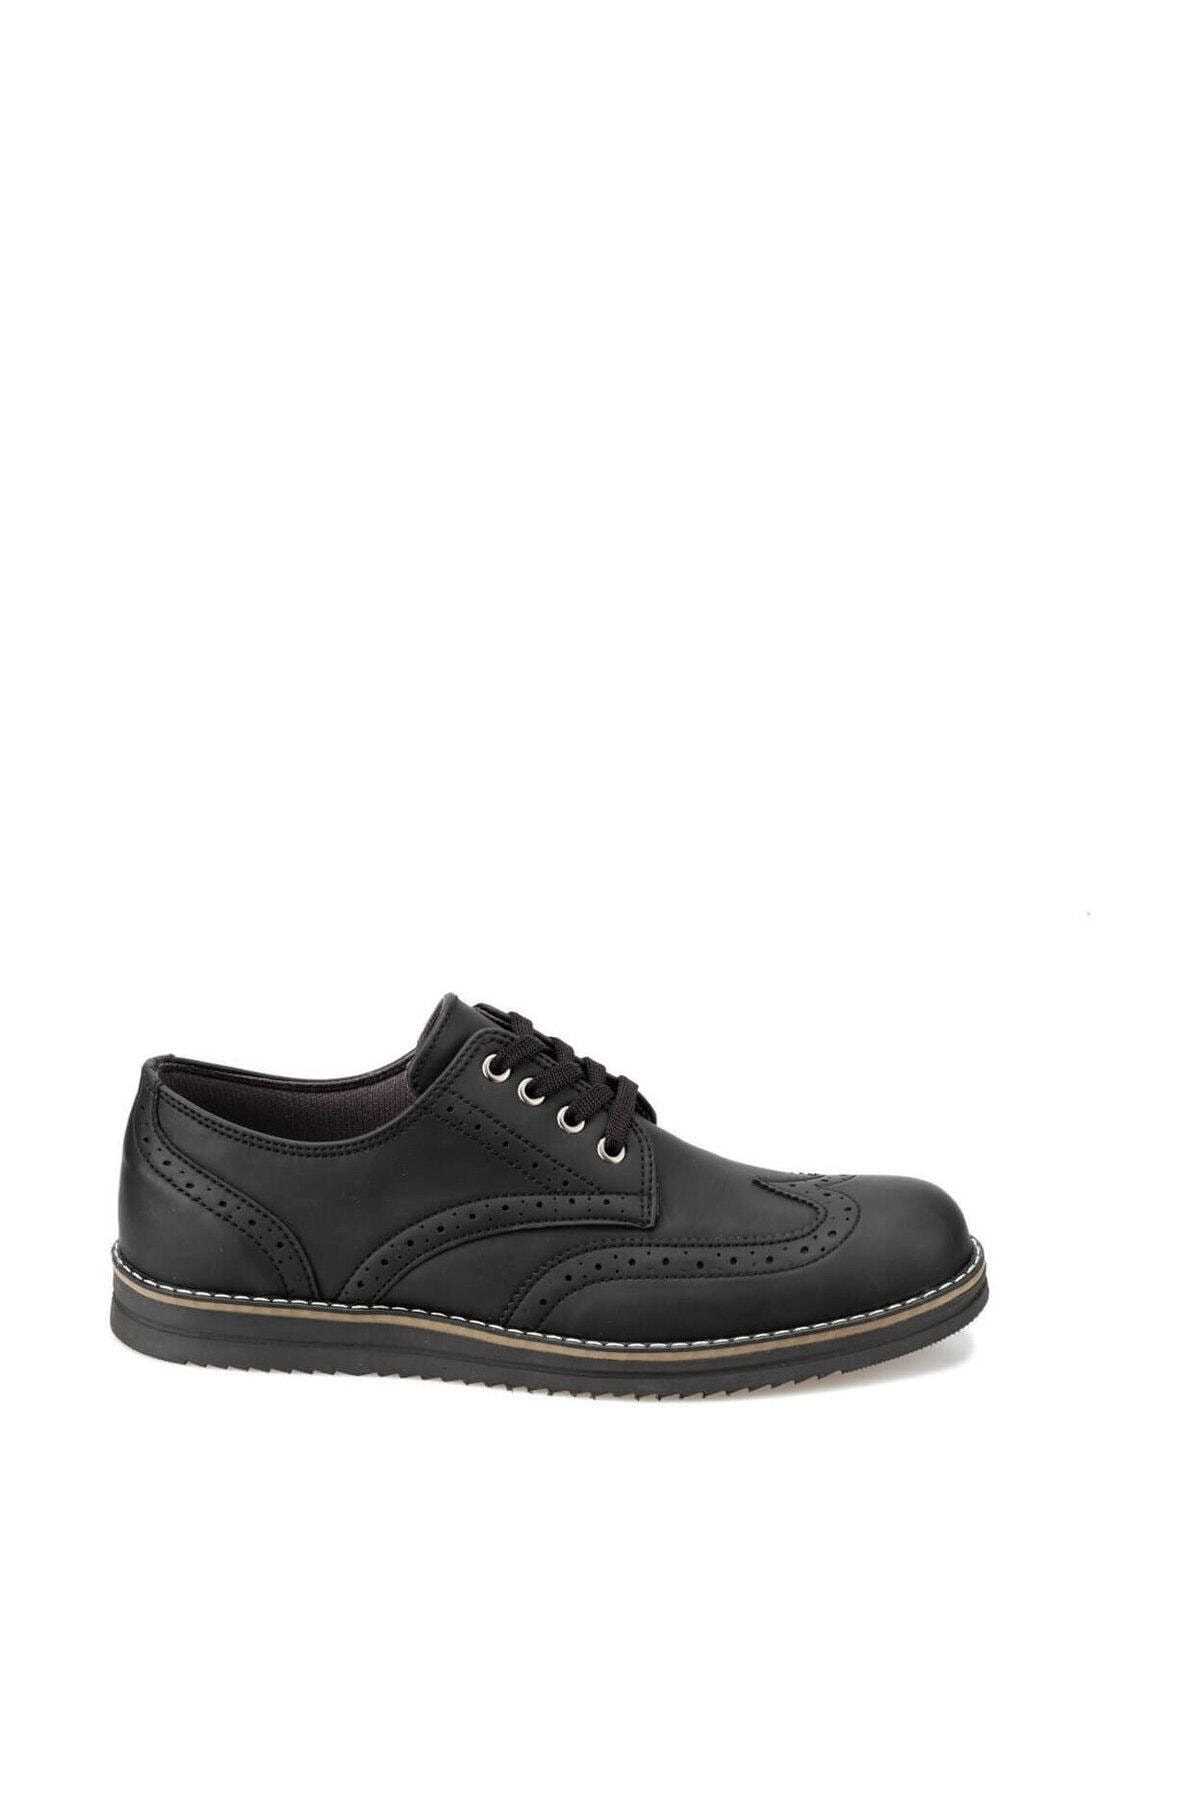 فروشگاه کفش کلاسیک مردانه تابستانی برند Polaris رنگ مشکی کد ty29743659